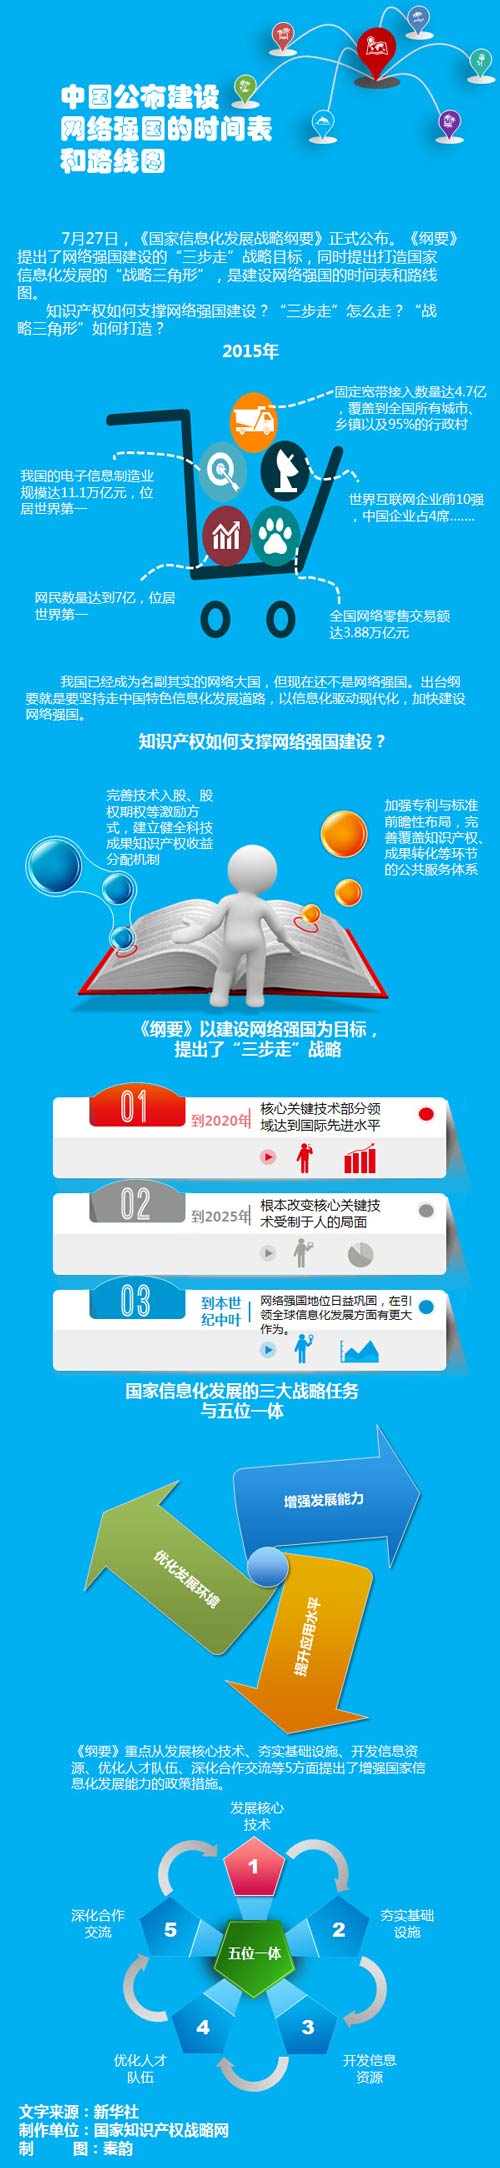 中国公布建设网络强国的时间表和路线图